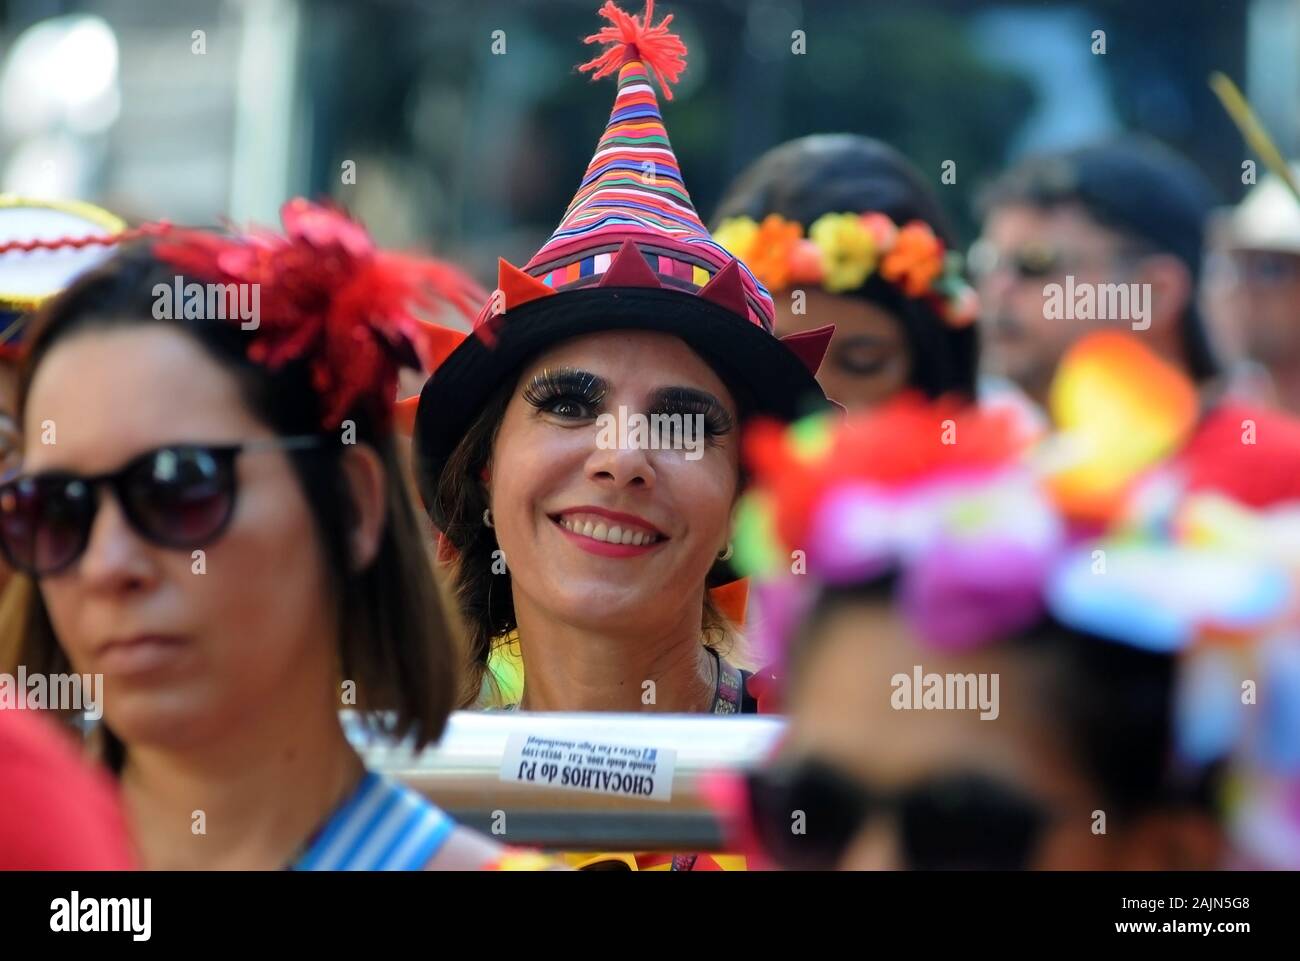 Rio de Janeiro, 2 febbraio 2017. I festaioli durante la sfilata del blocco Monobloco presso la strada di carnevale della città di Rio de Janeiro, Brasile Foto Stock